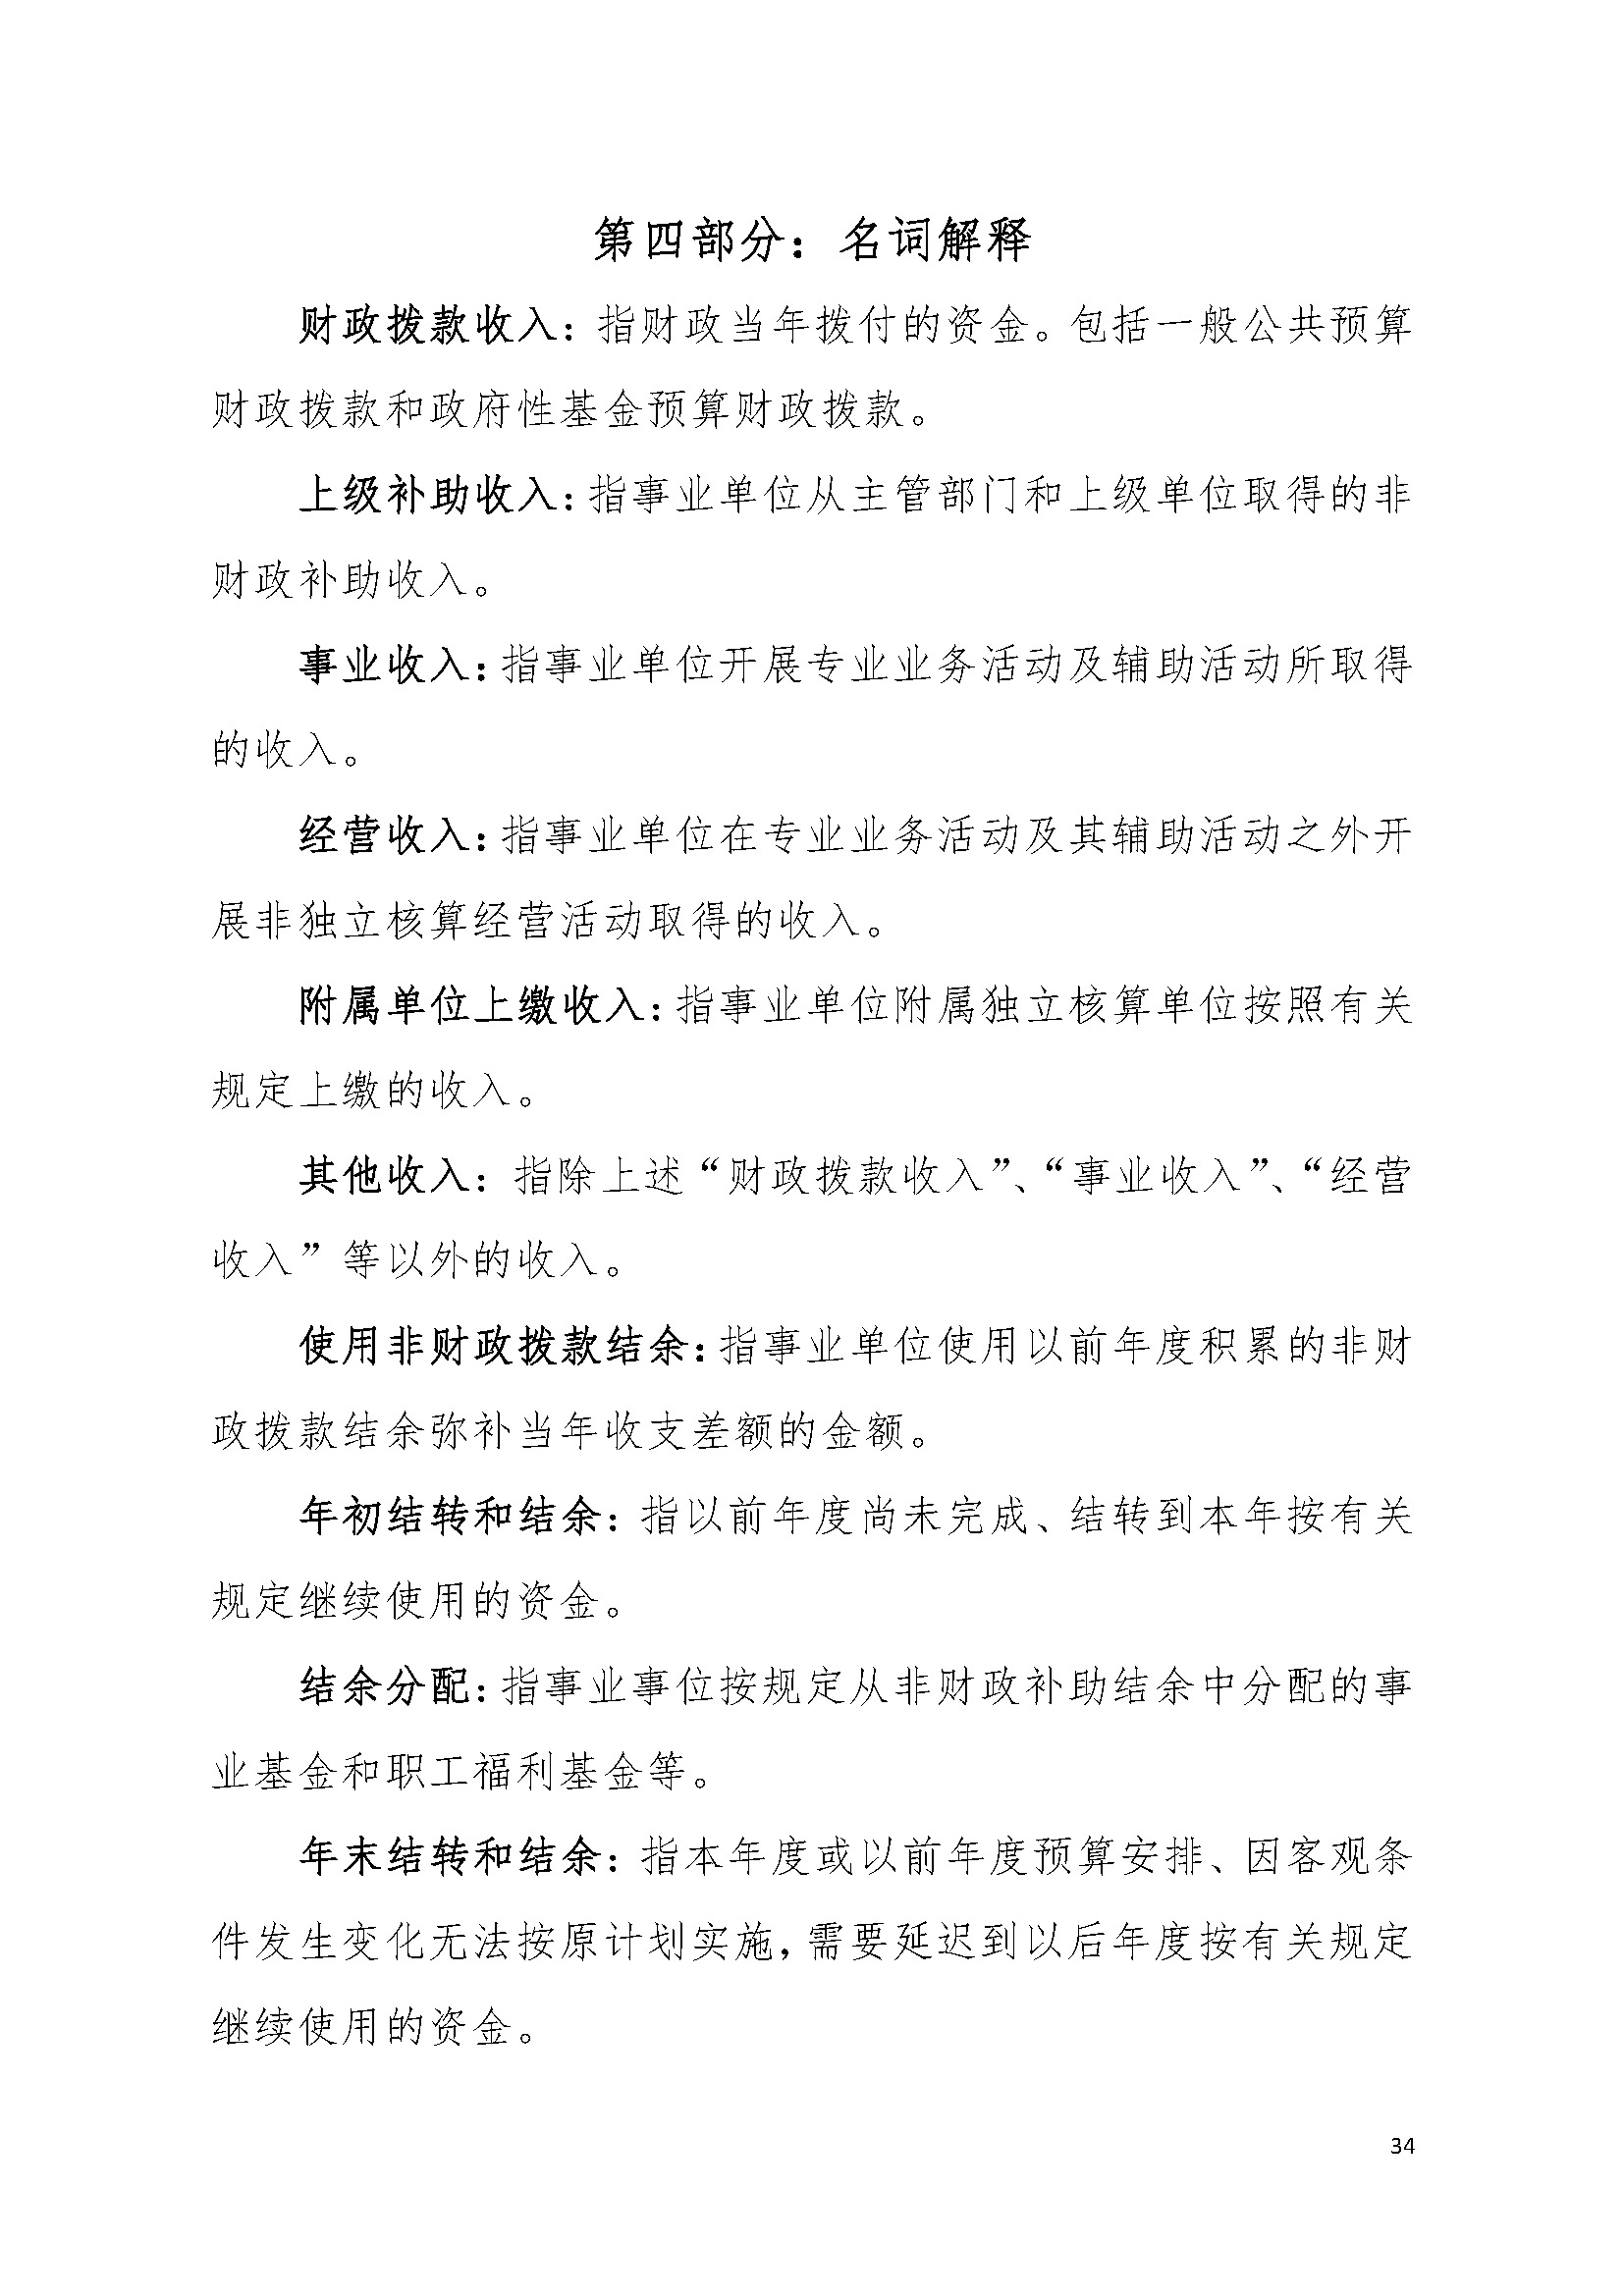 2021年广东省司法厅部门决算 _页面_34.jpg